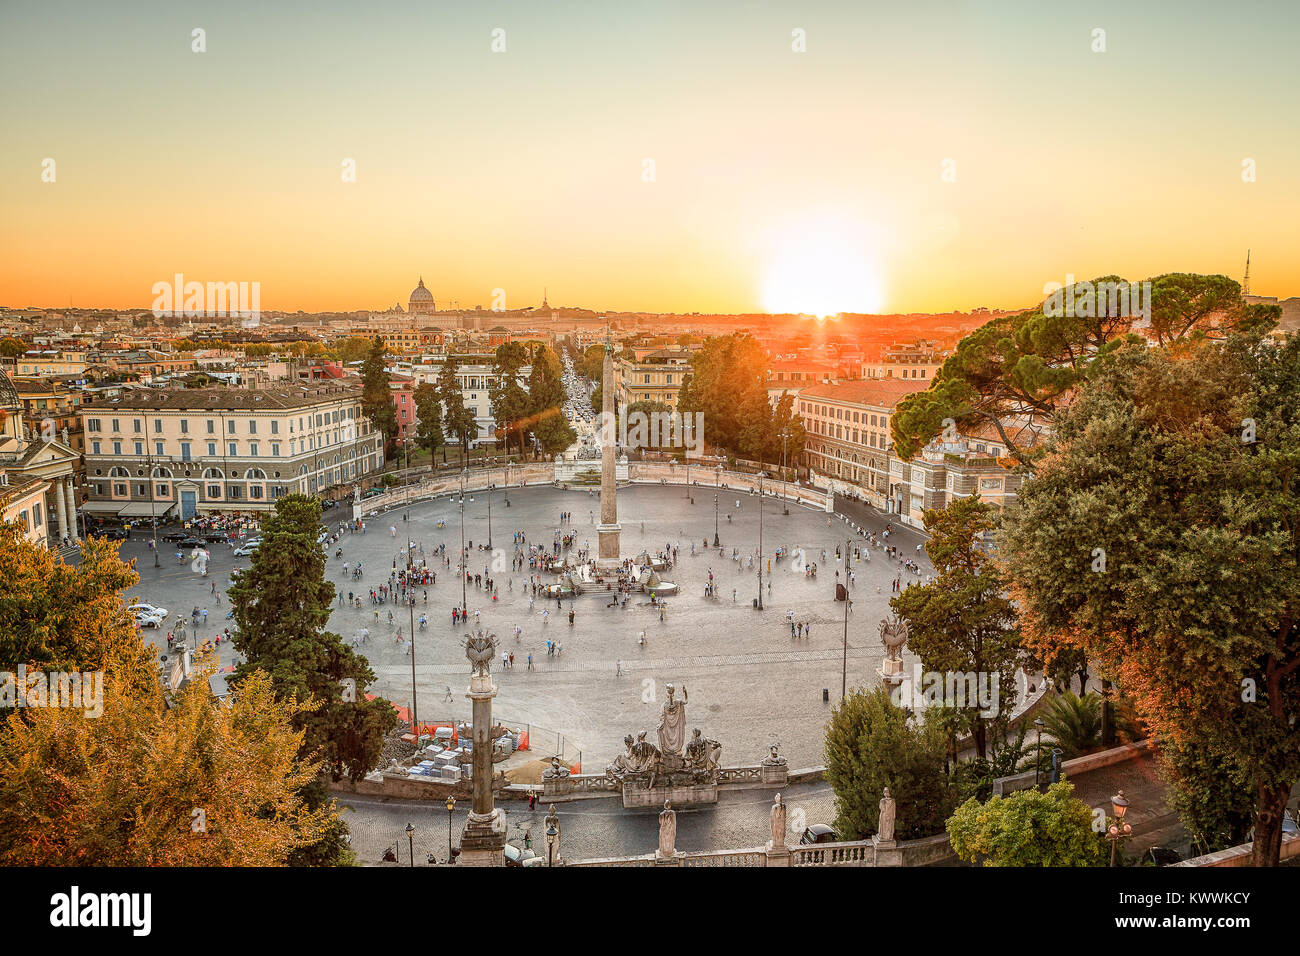 Rome célèbre Piazza del popolo au coucher du soleil avec l'obelisco flaminio dans le centre et le la basilique Saint Pierre en arrière-plan Banque D'Images